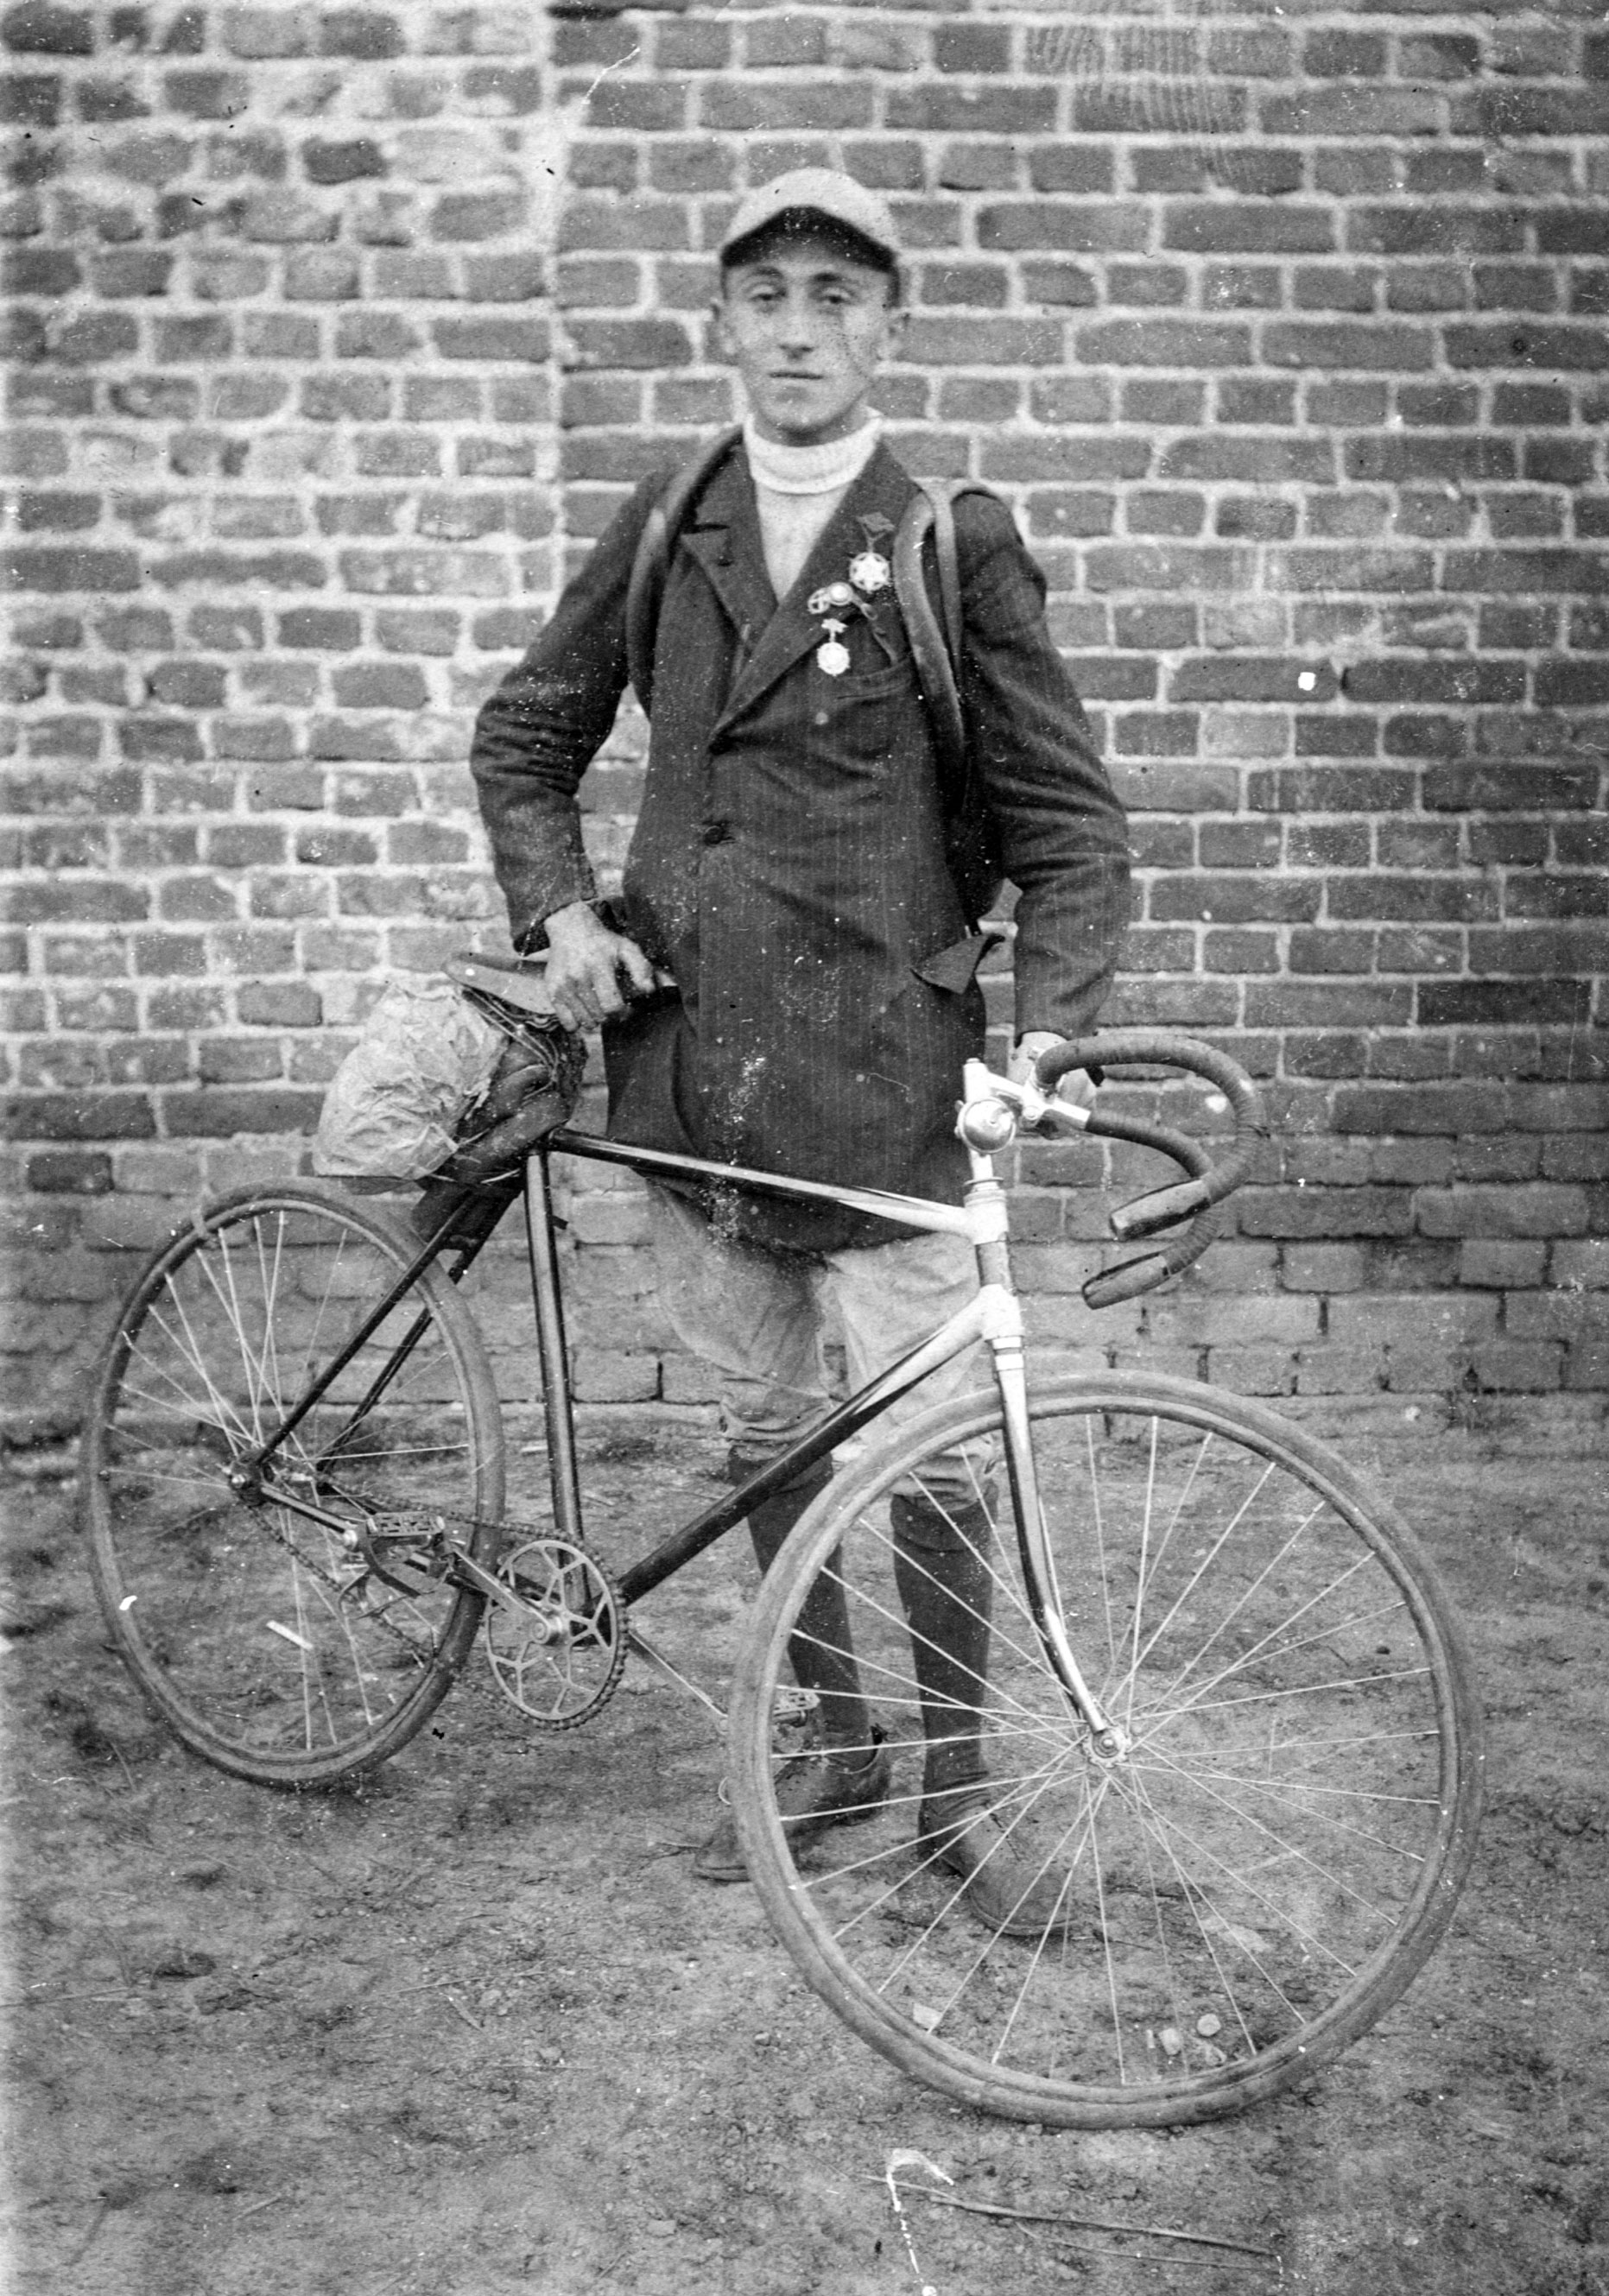 משה צוקרמן, חבר אגודת הספורט בר כוכבא בלודז' שבפולין, ליד אופניו